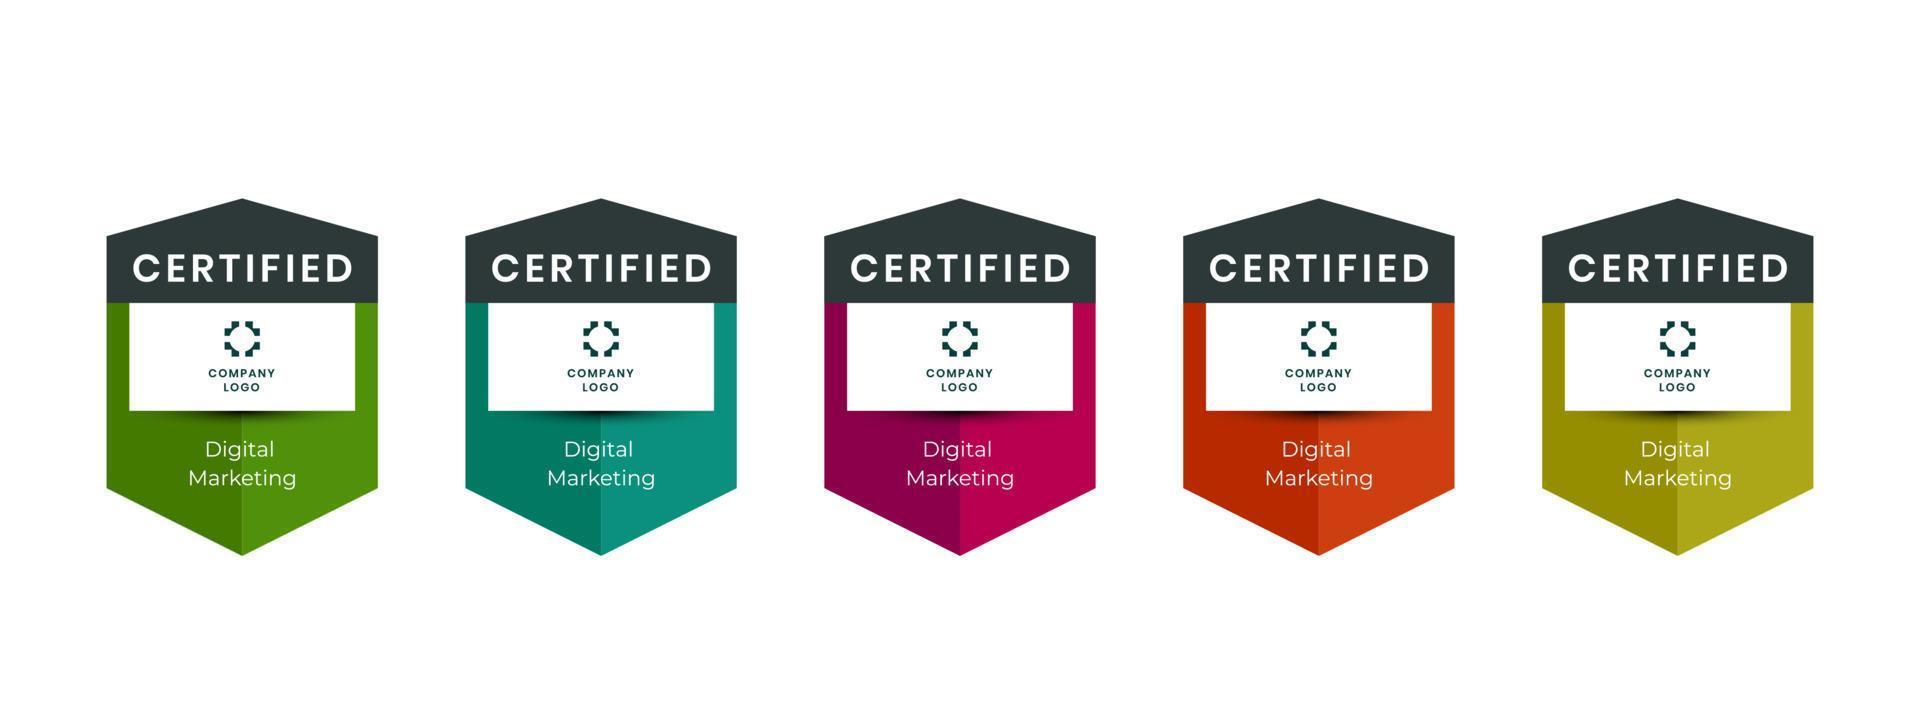 Certificados profesionales otorgados logo insignia vector. insignias de certificación digital otorgadas a los profesionales técnicos que han aprobado con éxito un examen de certificación o logrado vector